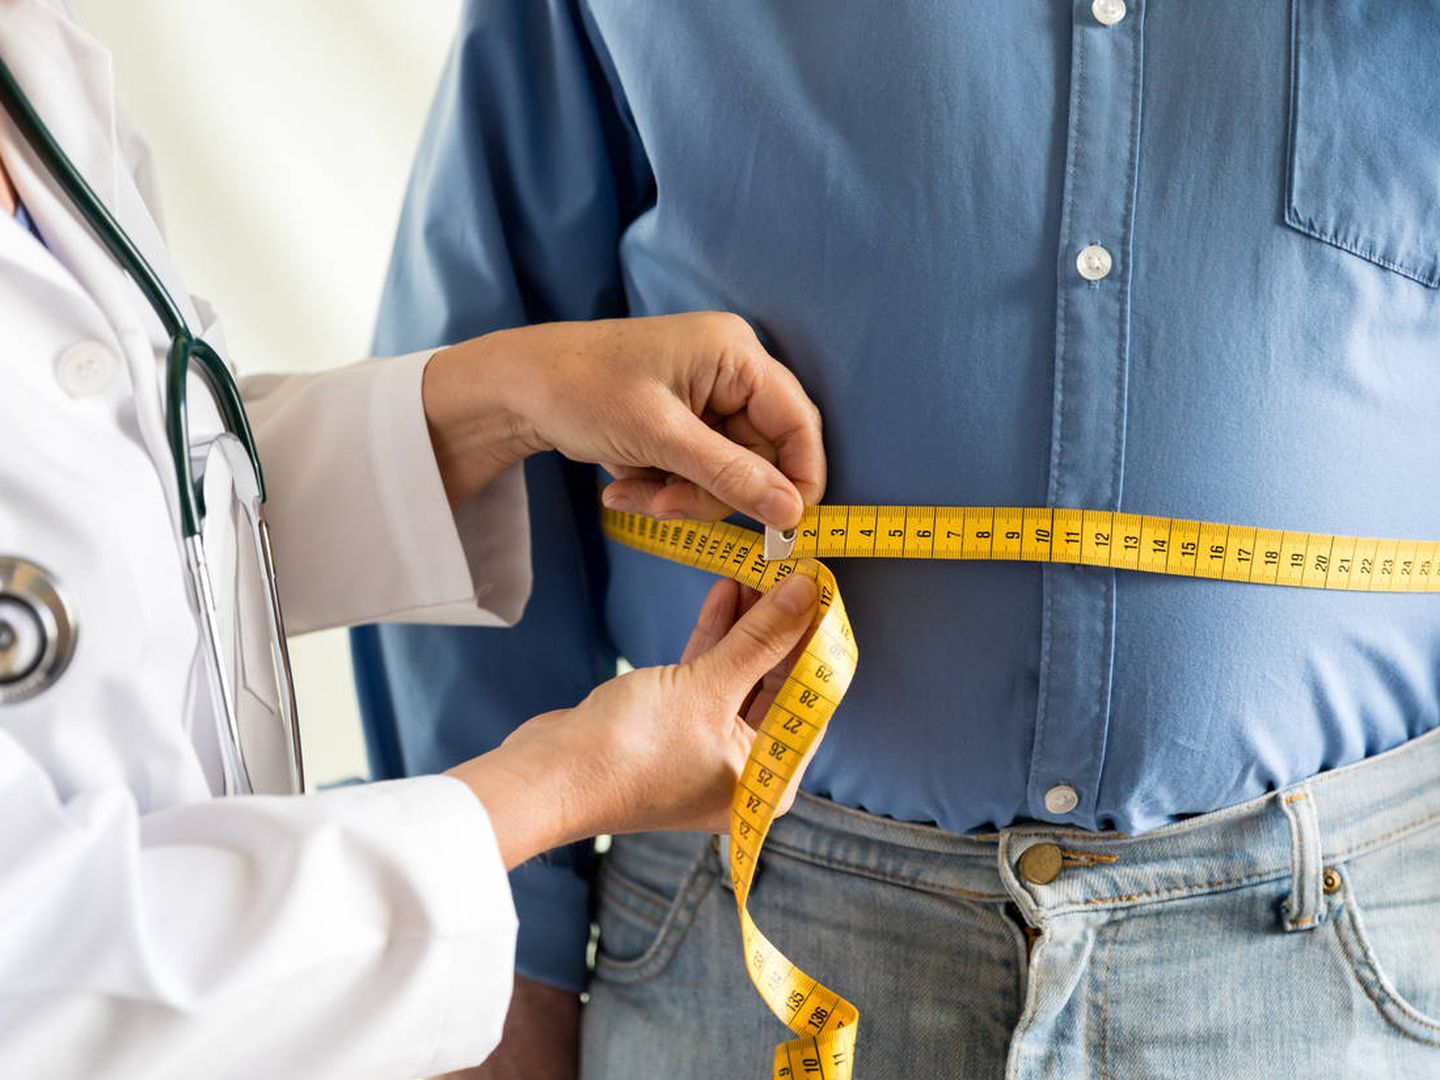 El 25% de los españoles sufre sobrepeso según la Sociedad Española de Cardiología. (iStock)